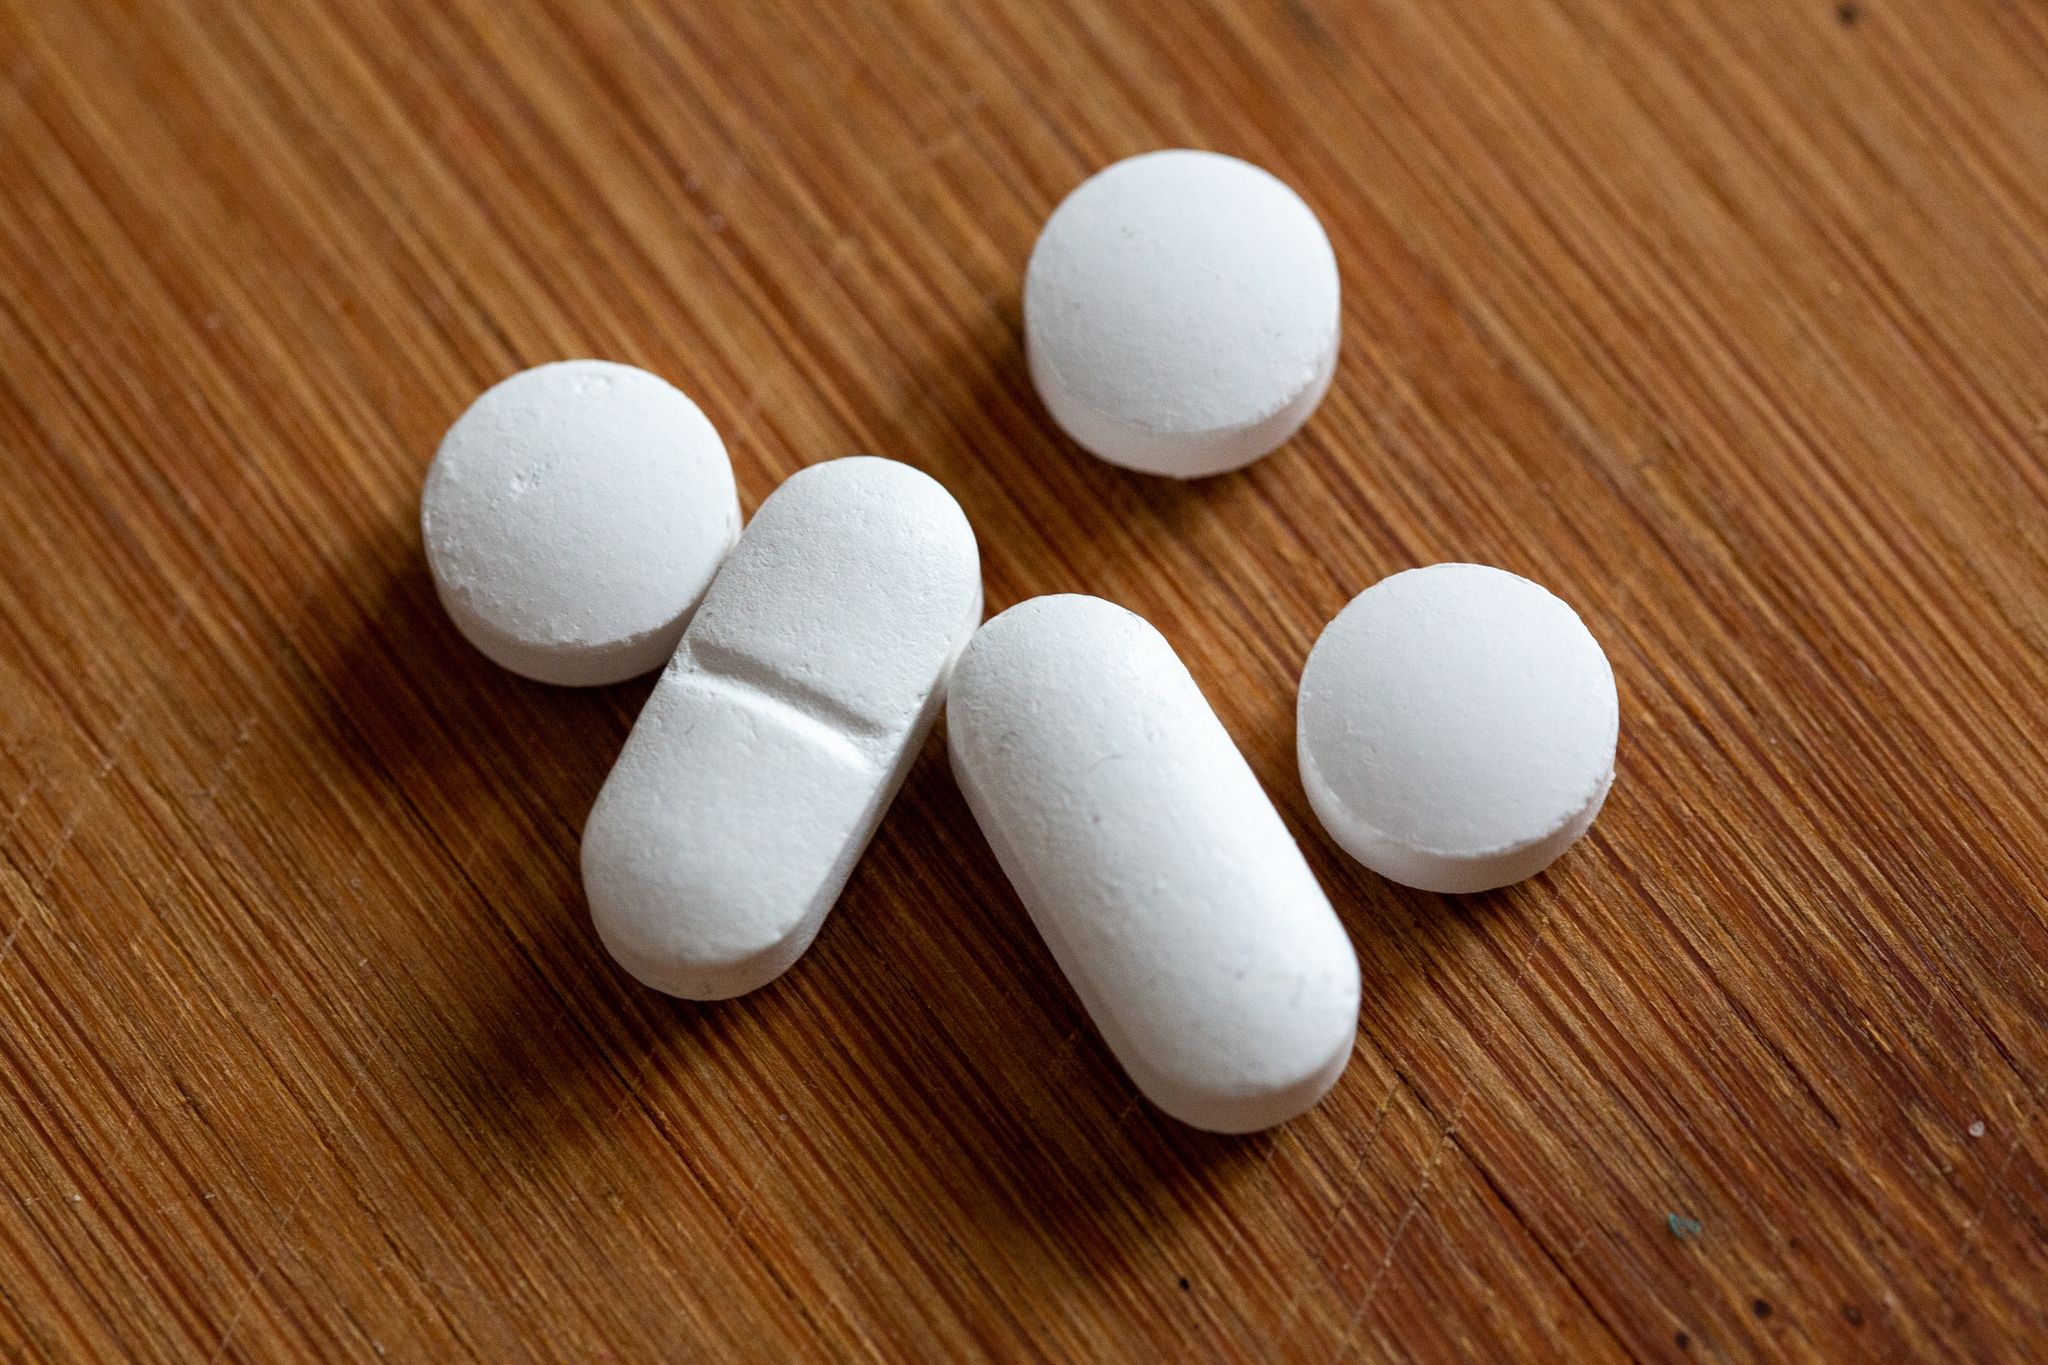 Etwa jeder Dritte nimmt regelmäßig Vitamine in Pulver- oder Pillenform ein. In der Corona-Pandemie ist der Absatz solcher Produkte gestiegen.